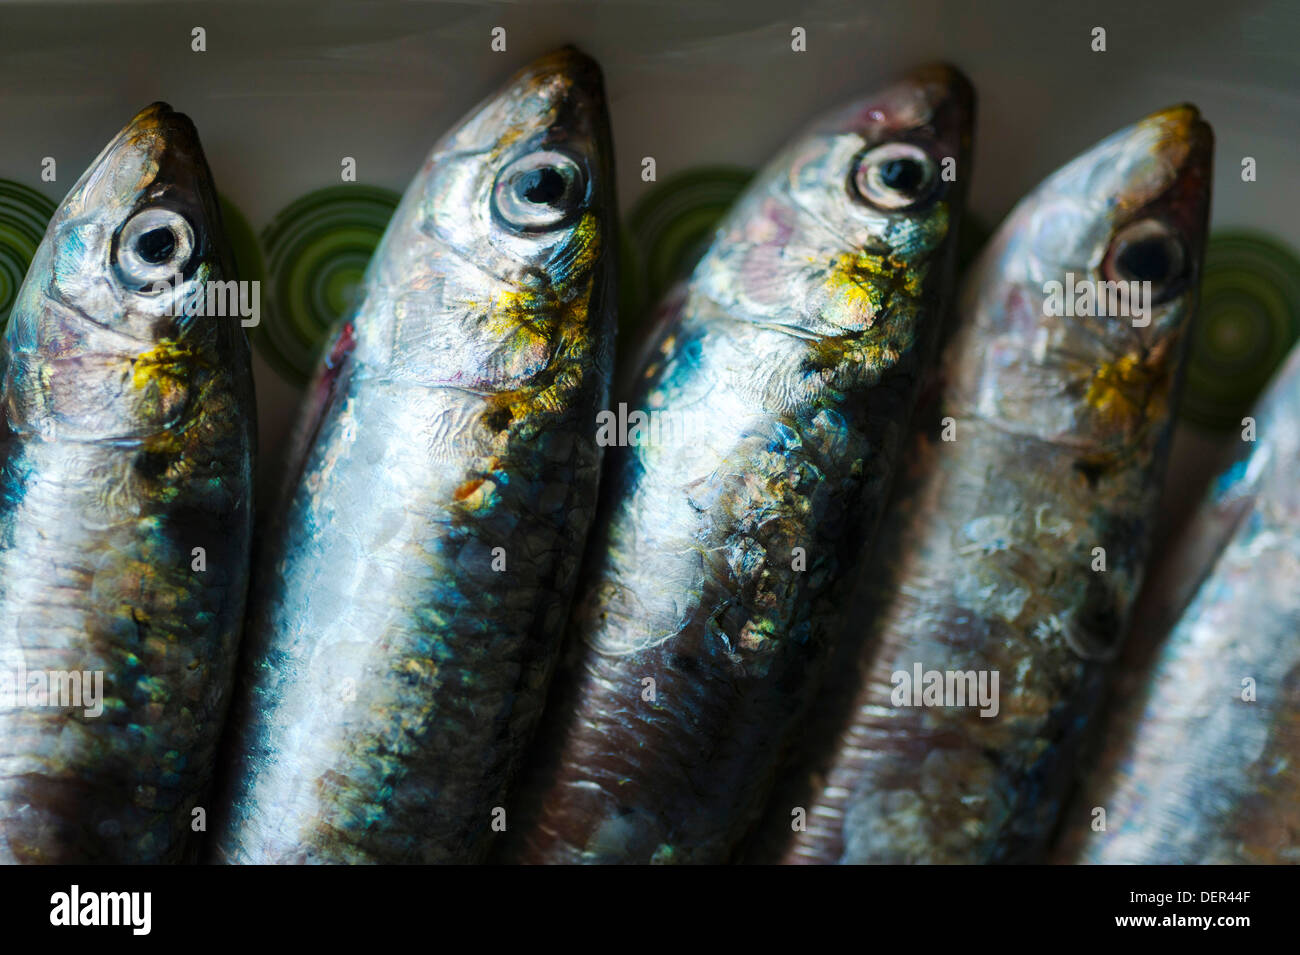 four raw sardines (Sardina pilchardus) on plate Stock Photo